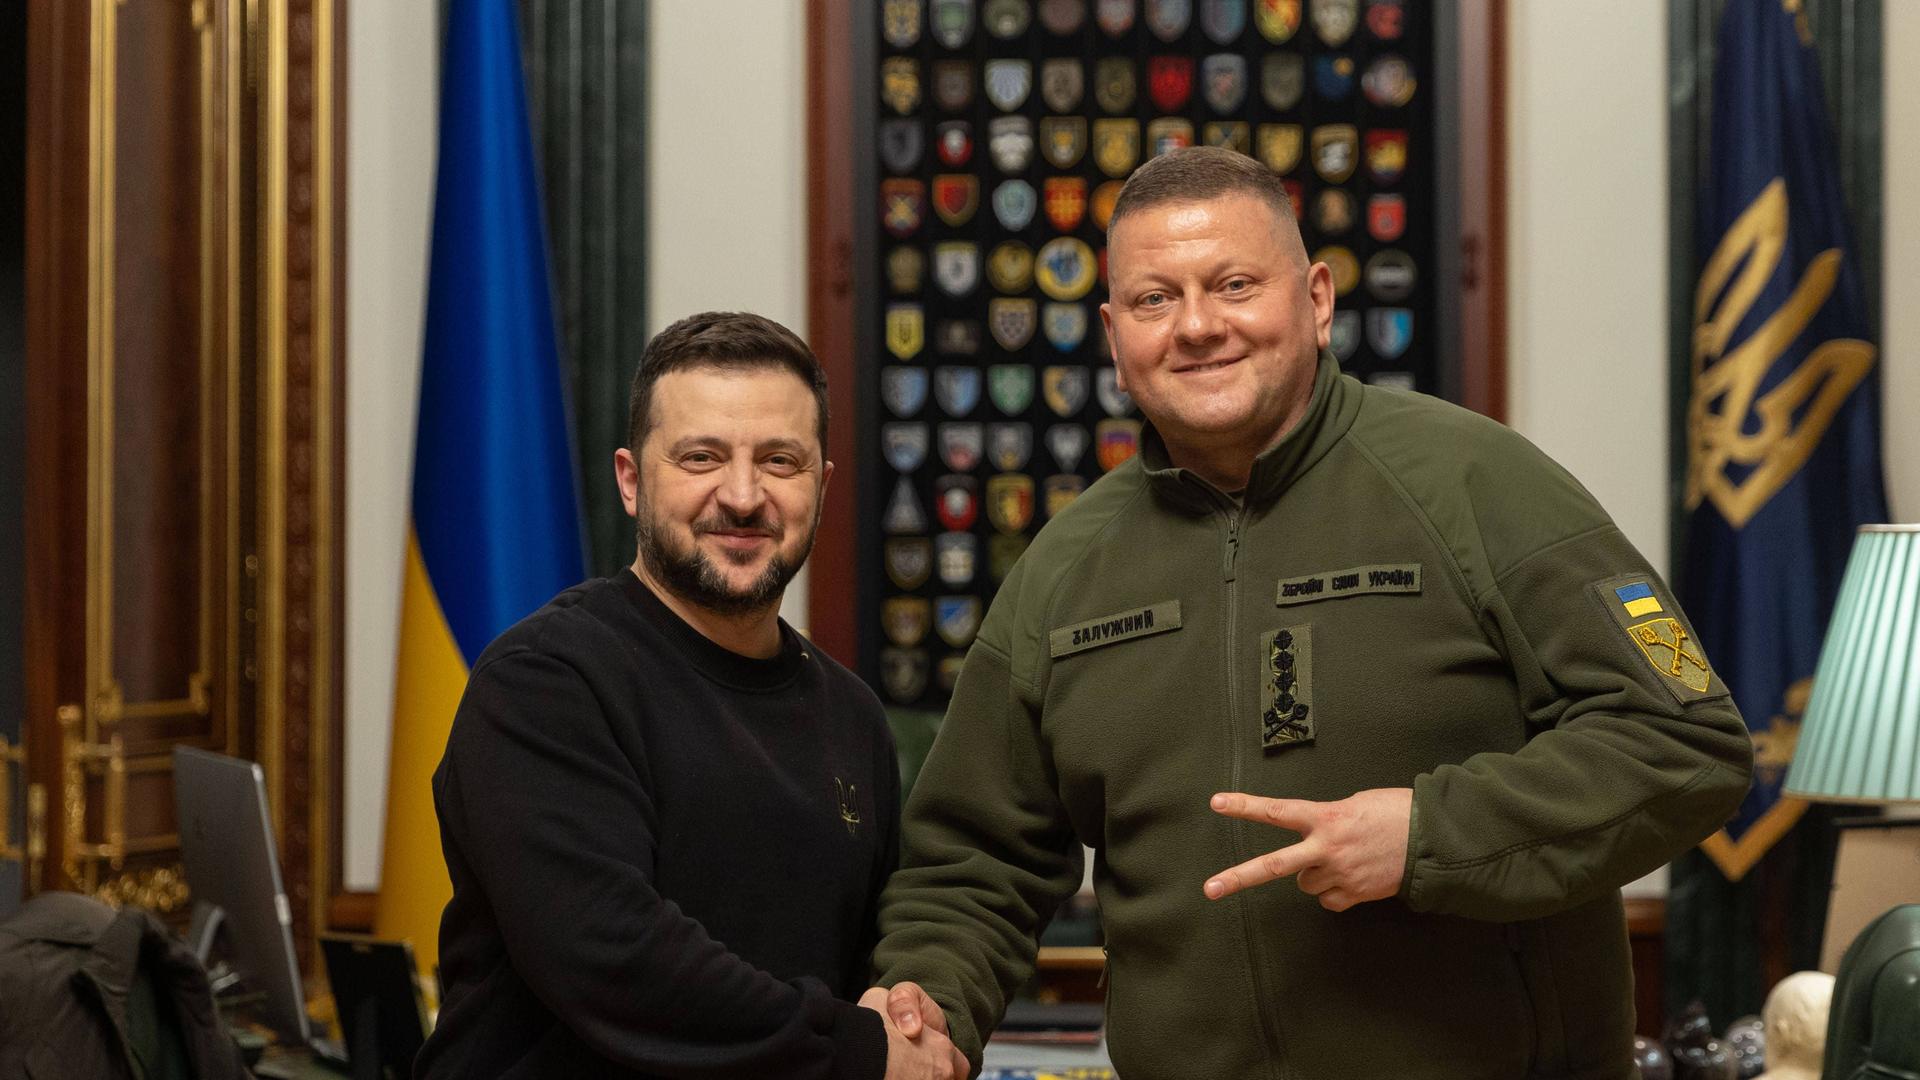 Man sieht den ukrainischen Präsident Wolodymyr Selenskyj mit dem ehemaligen Oberkommandierenden der ukrainischen Streitkräfte, Walerij Saluschnyj. Sie geben sich die Hand.